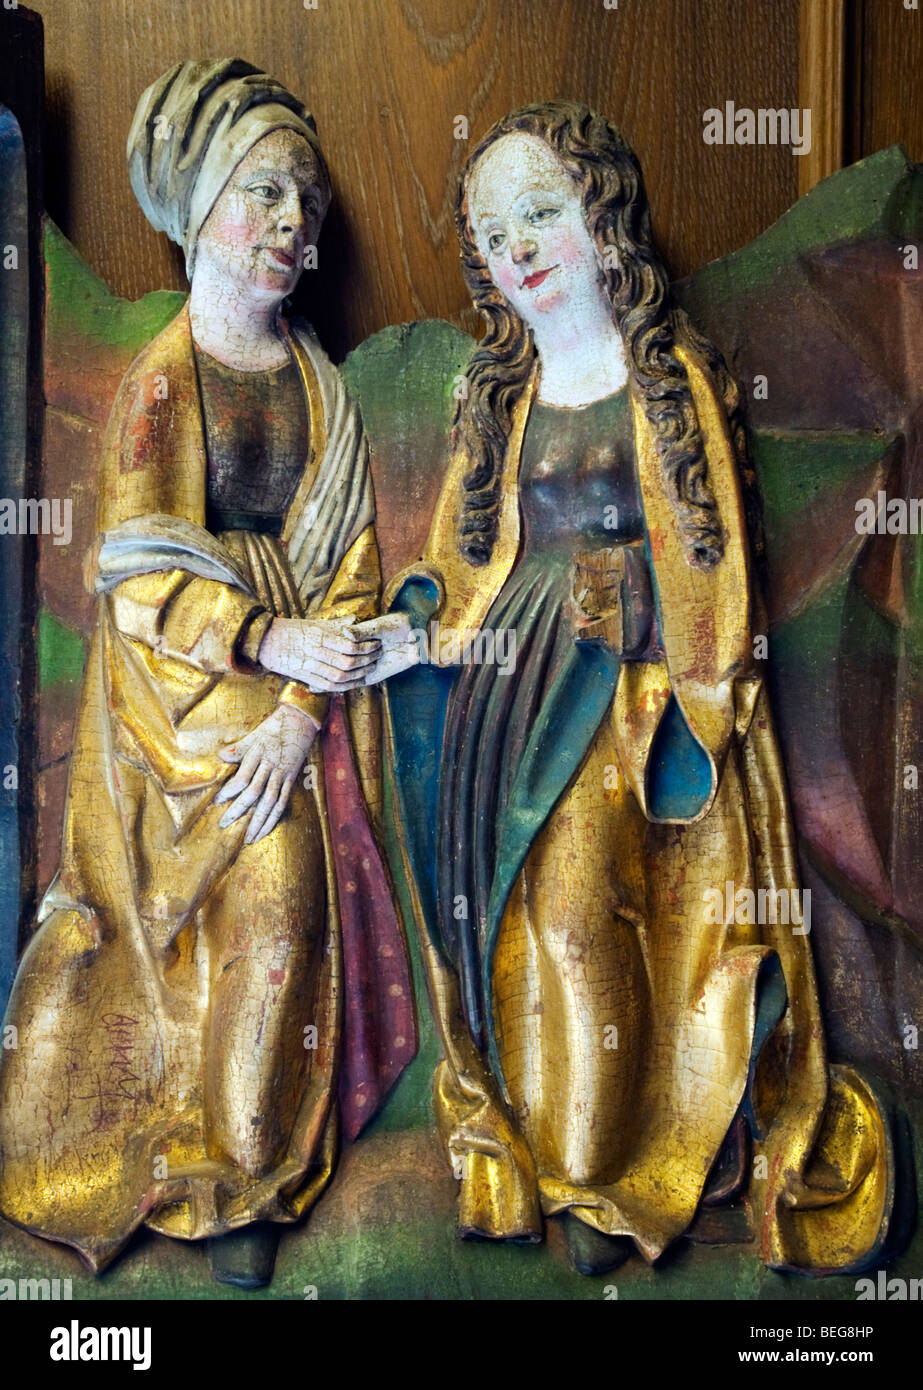 Religieuse médiévale en bois sculpté des artéfacts sur l'affichage à Markisches Musée dans le centre de Berlin, Allemagne Banque D'Images